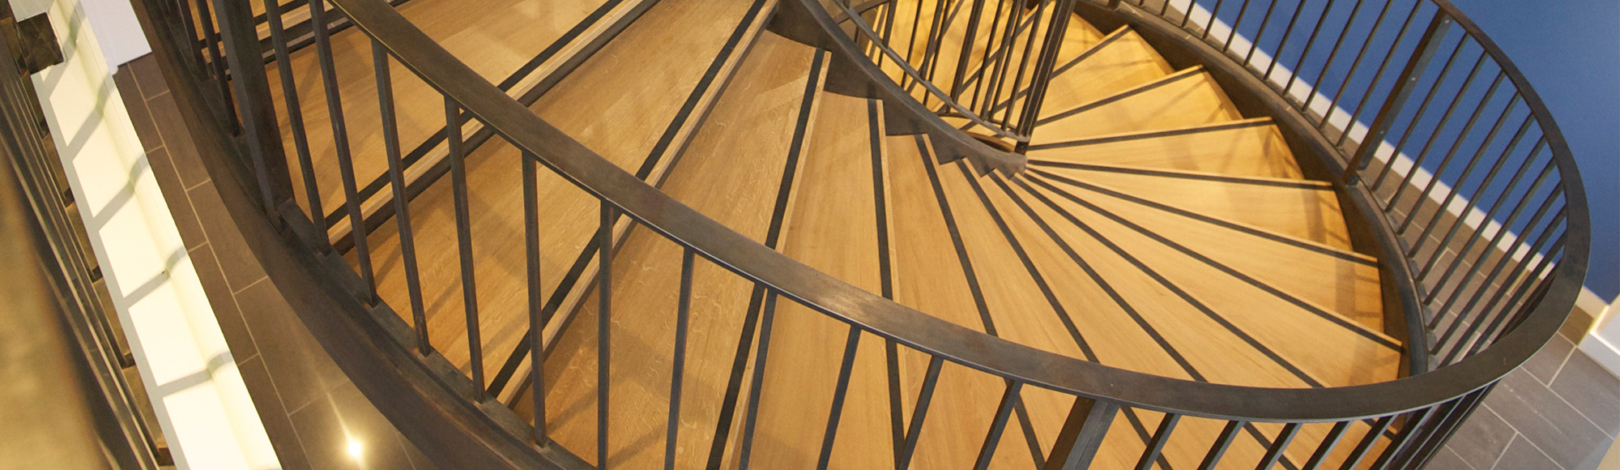 escalier metal bois sur mesure